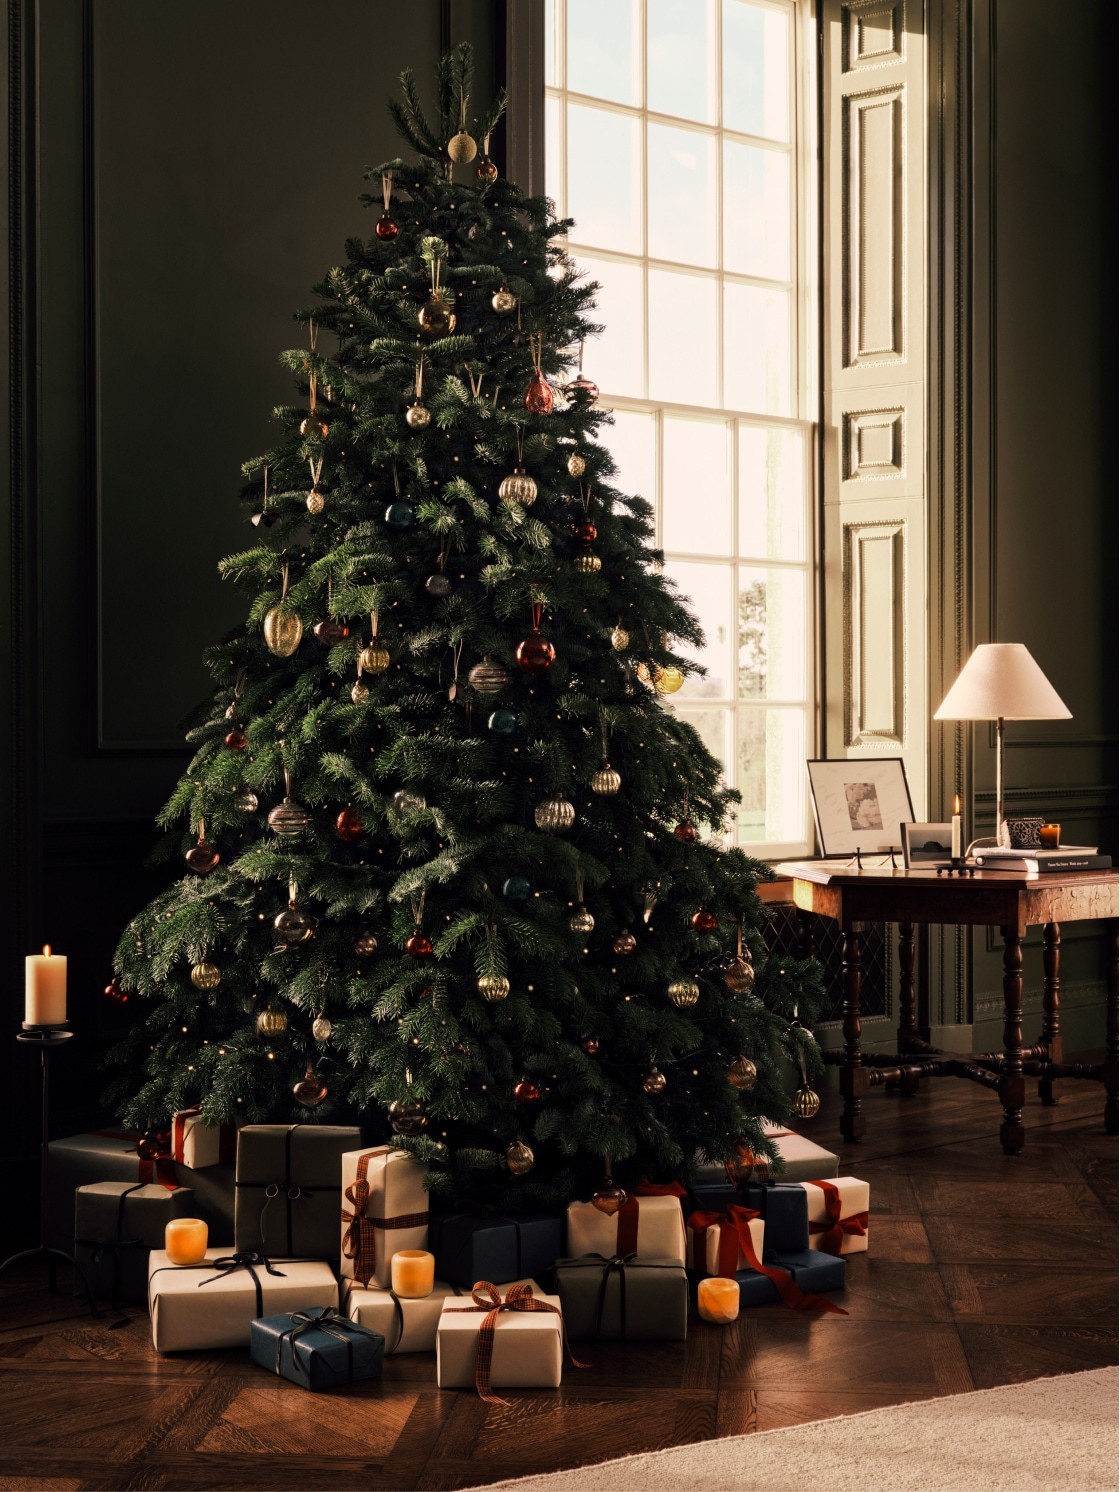 En Zara Home proponen decorar la base de el árbol de Navidad con regalos.